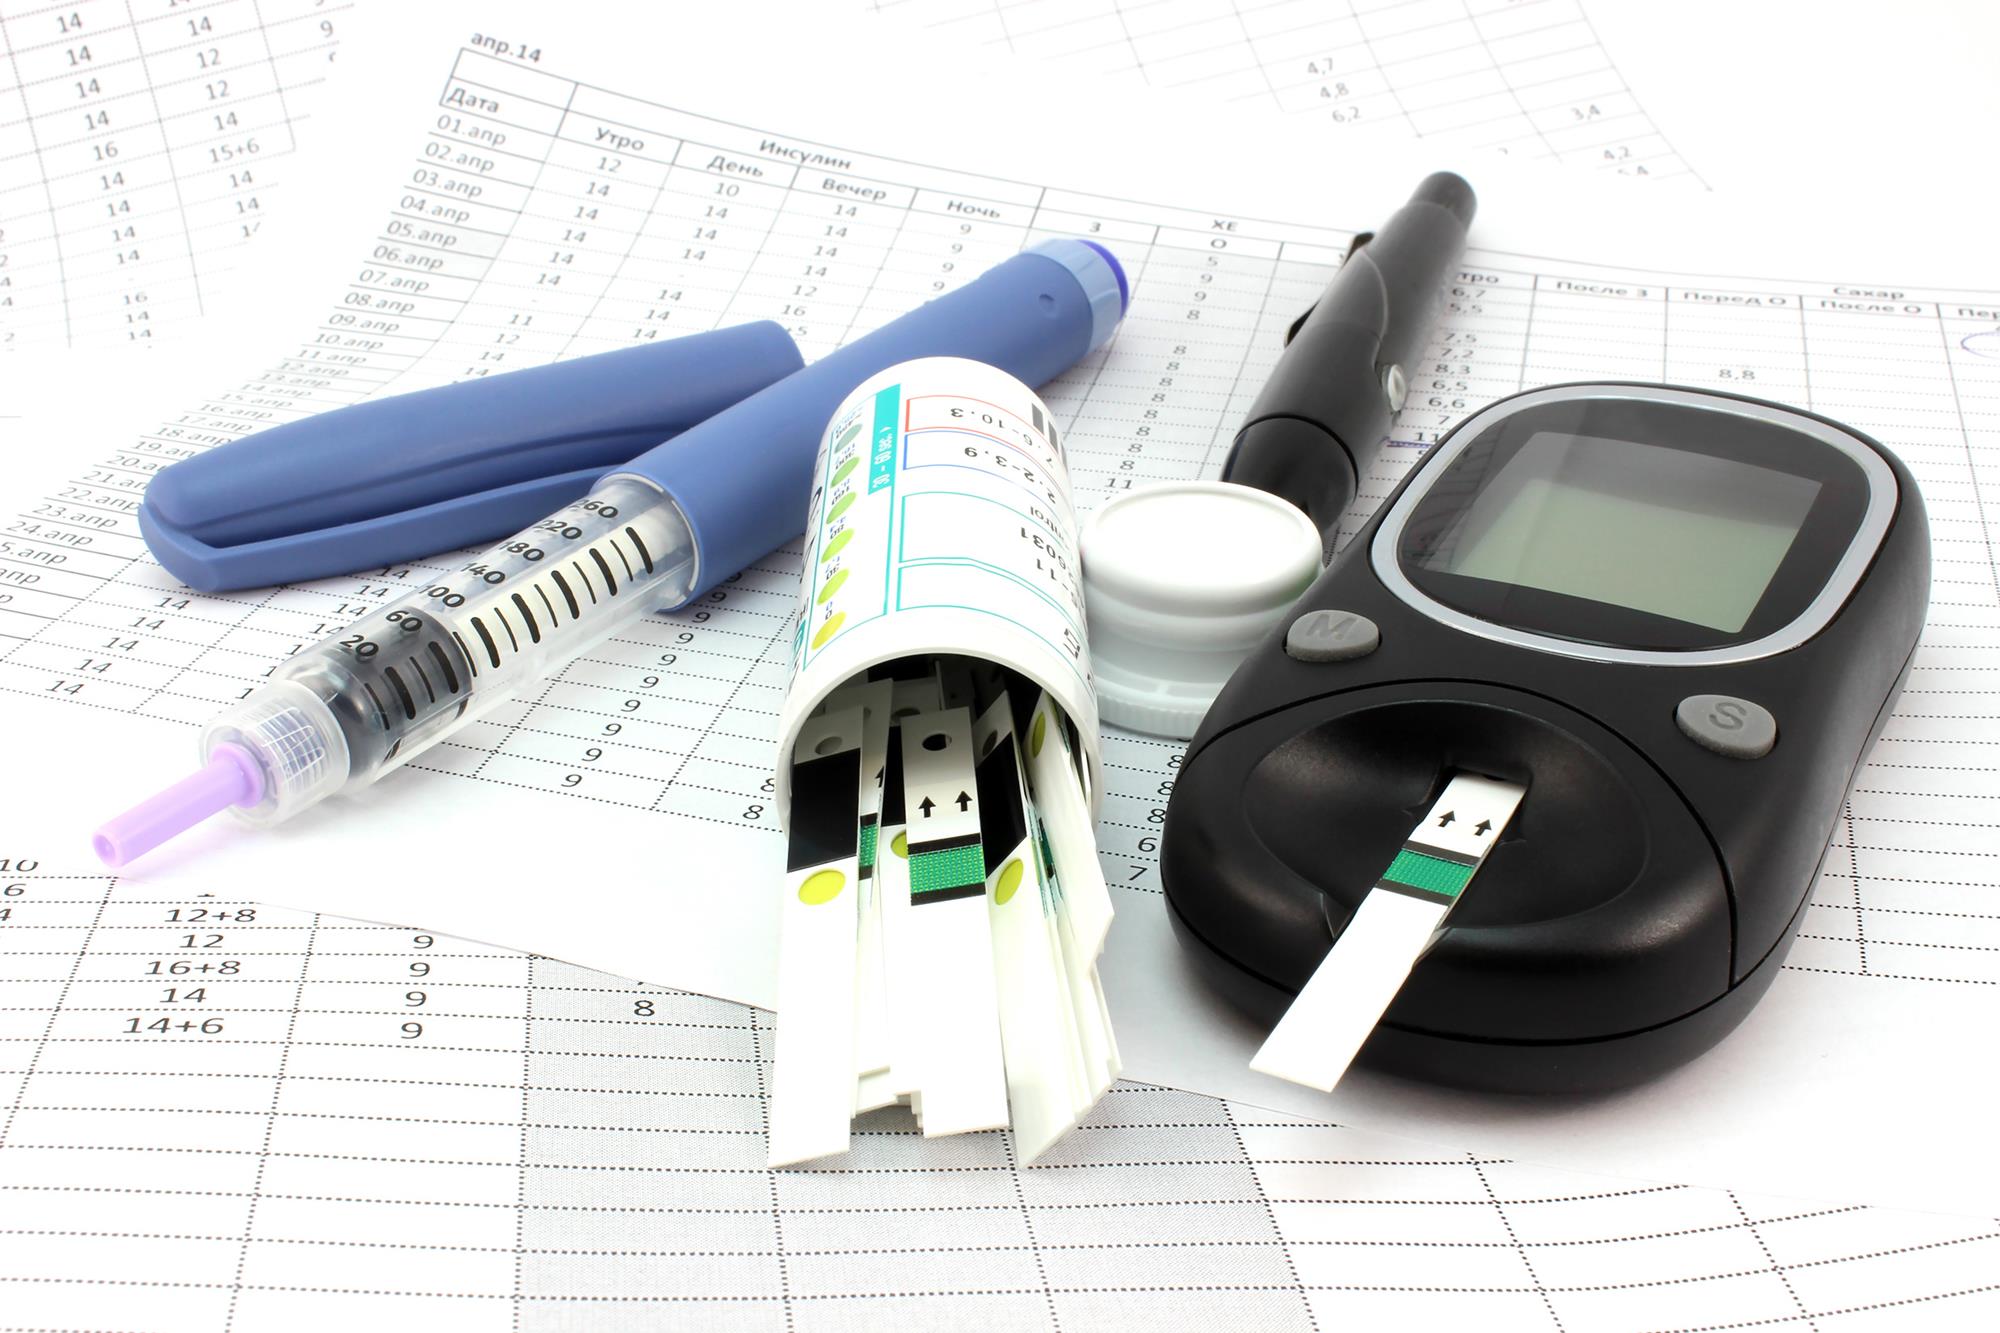 Akcesoria dla cukrzyków - strzykawka z insuliną i urządzenie do mierzenia poziomu glukozy